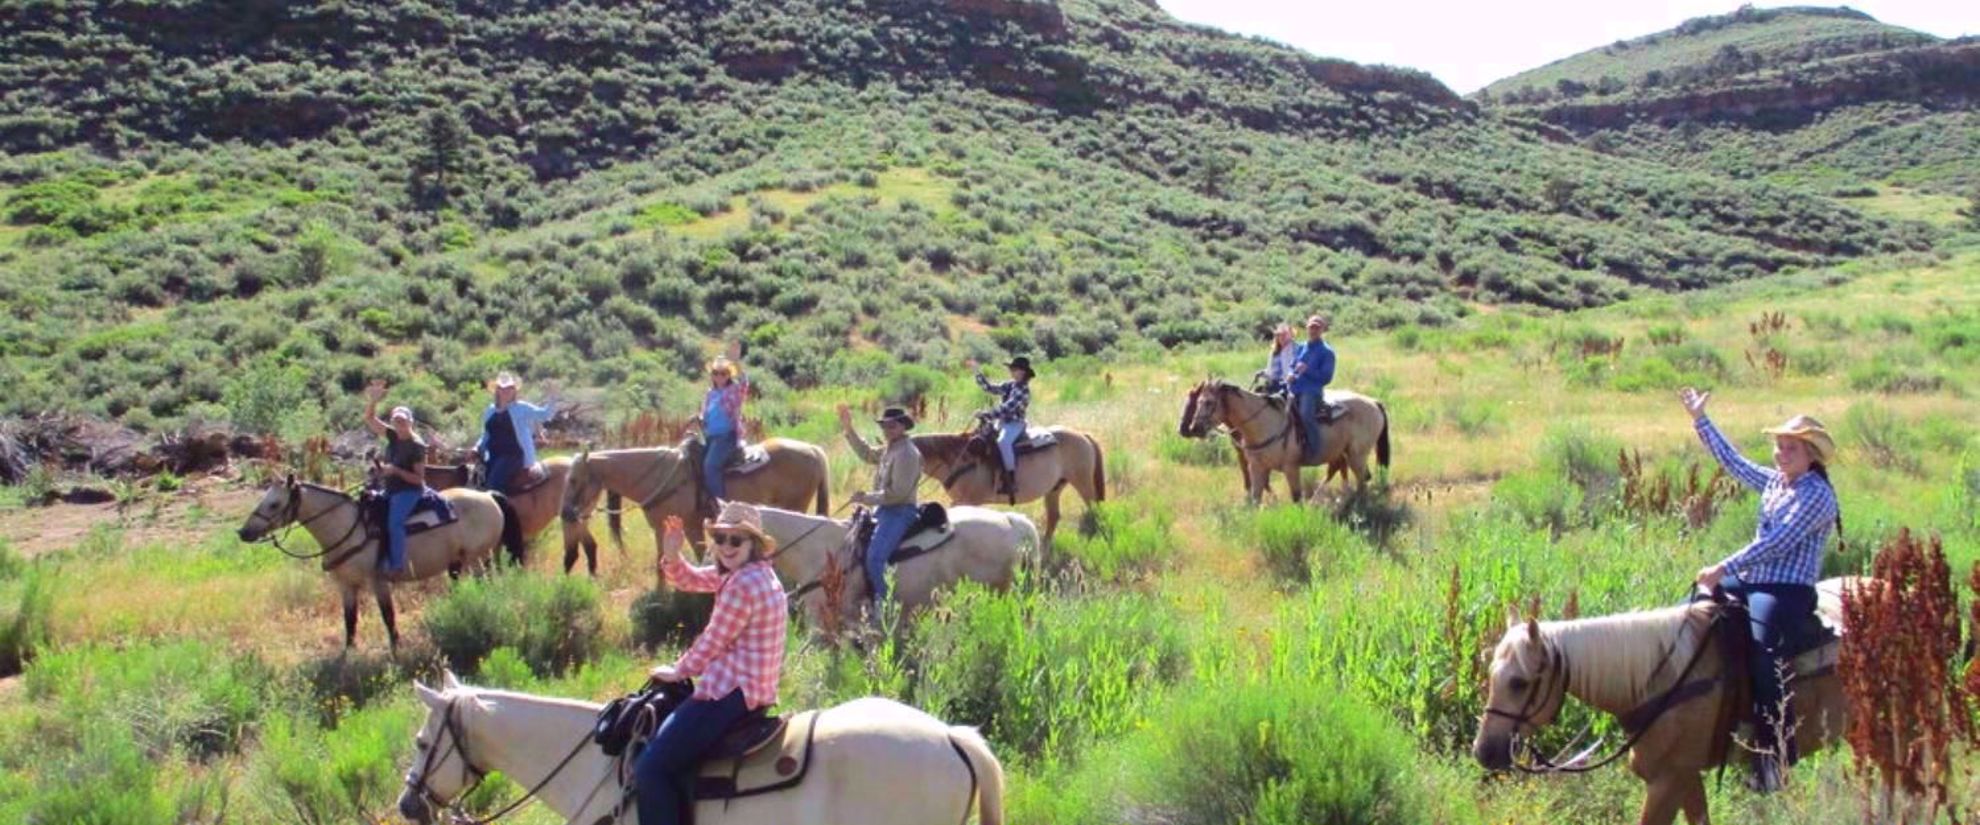 women's horse trip in colorado